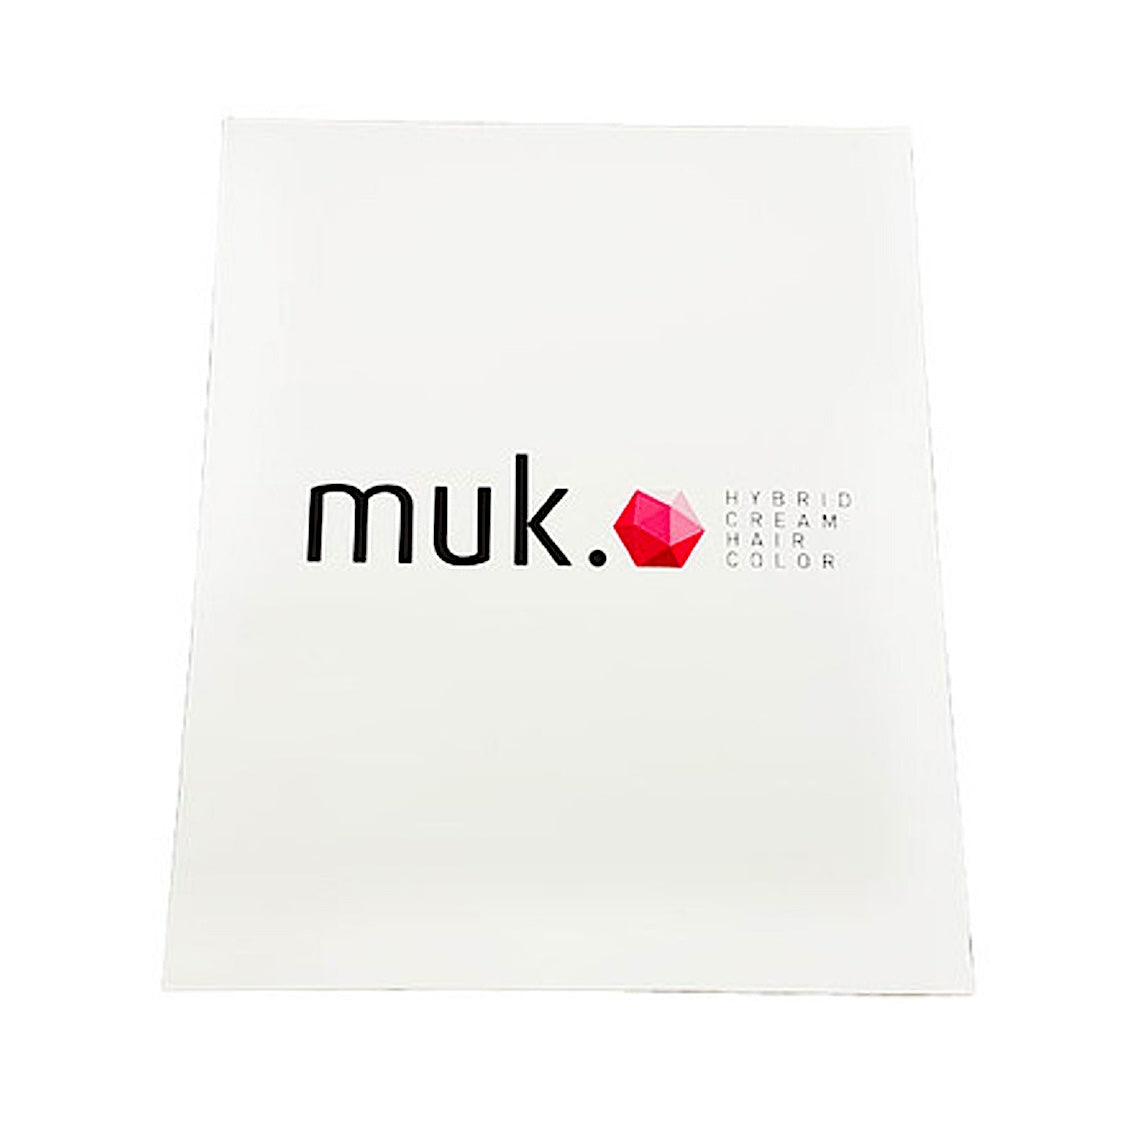 Muk Hybrid Cream Hair Colour Chart